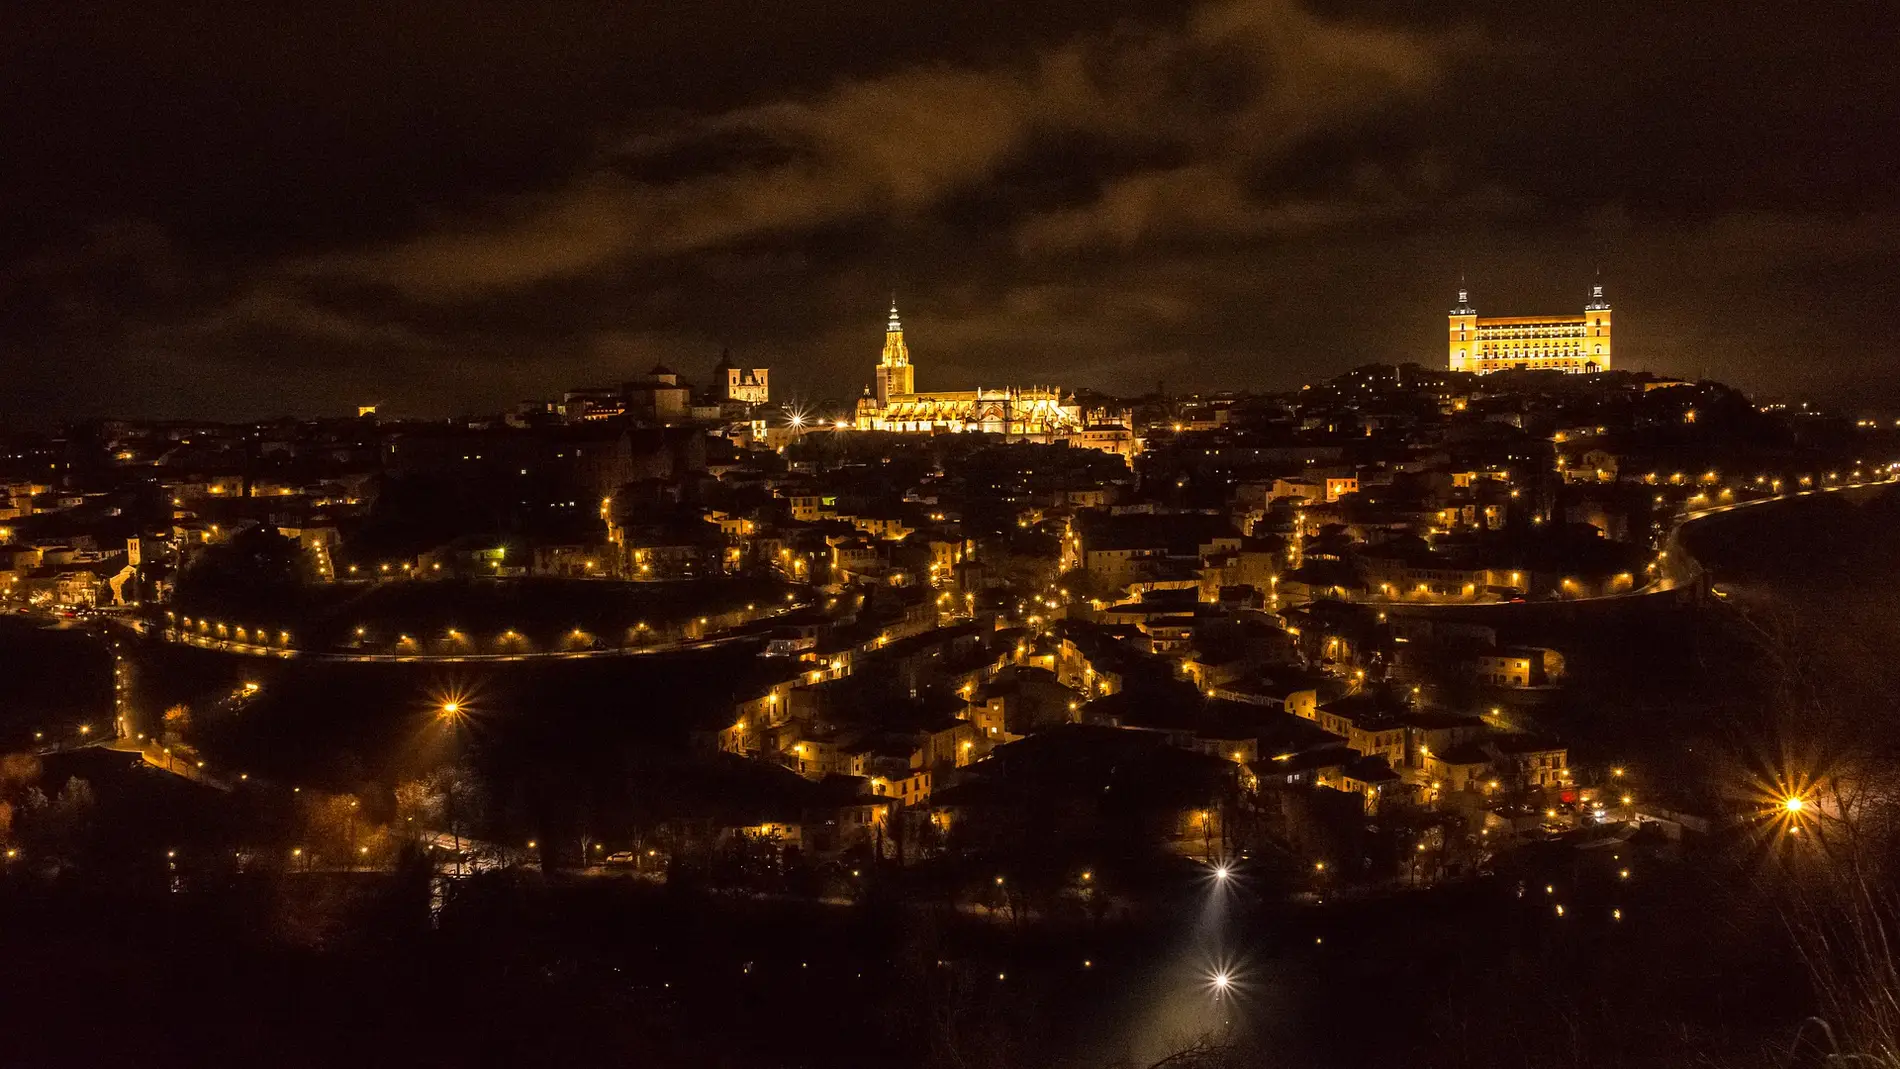 Toledo elegida como la mejor vista panorámica nocturna del mundo